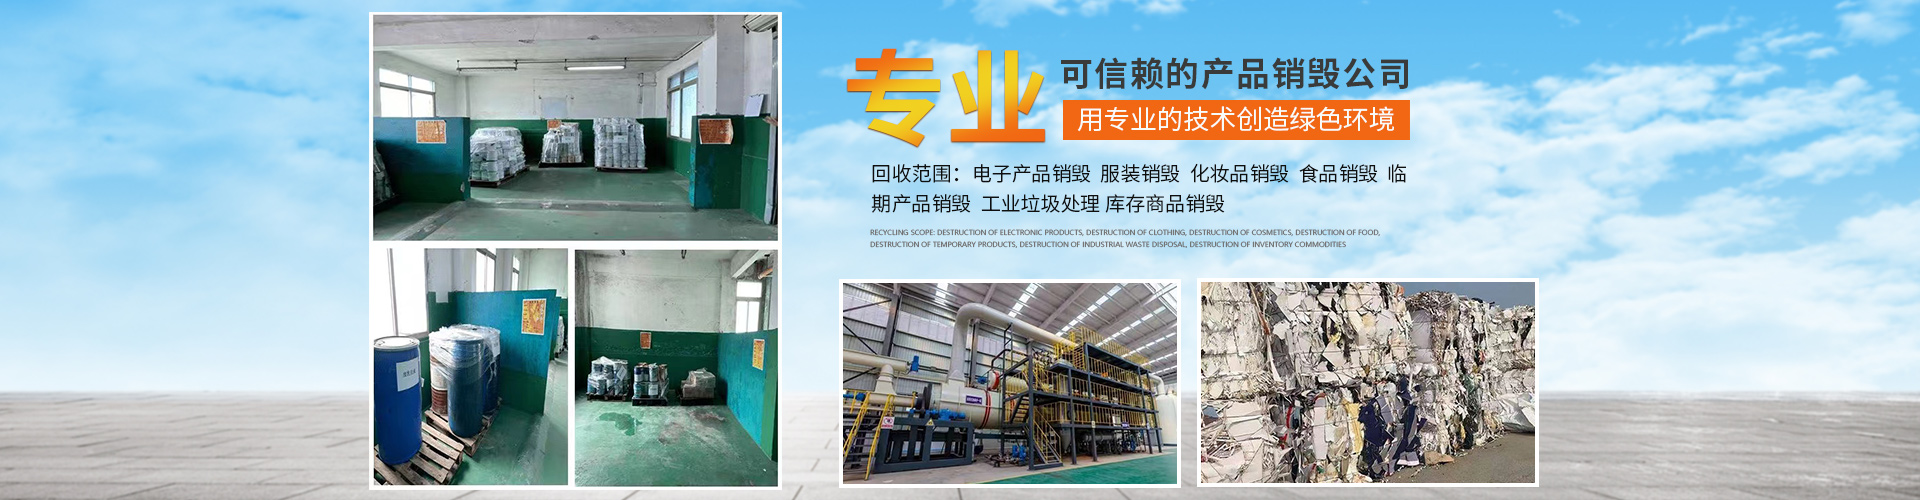 上海工业垃圾处置 工业垃圾处理方法